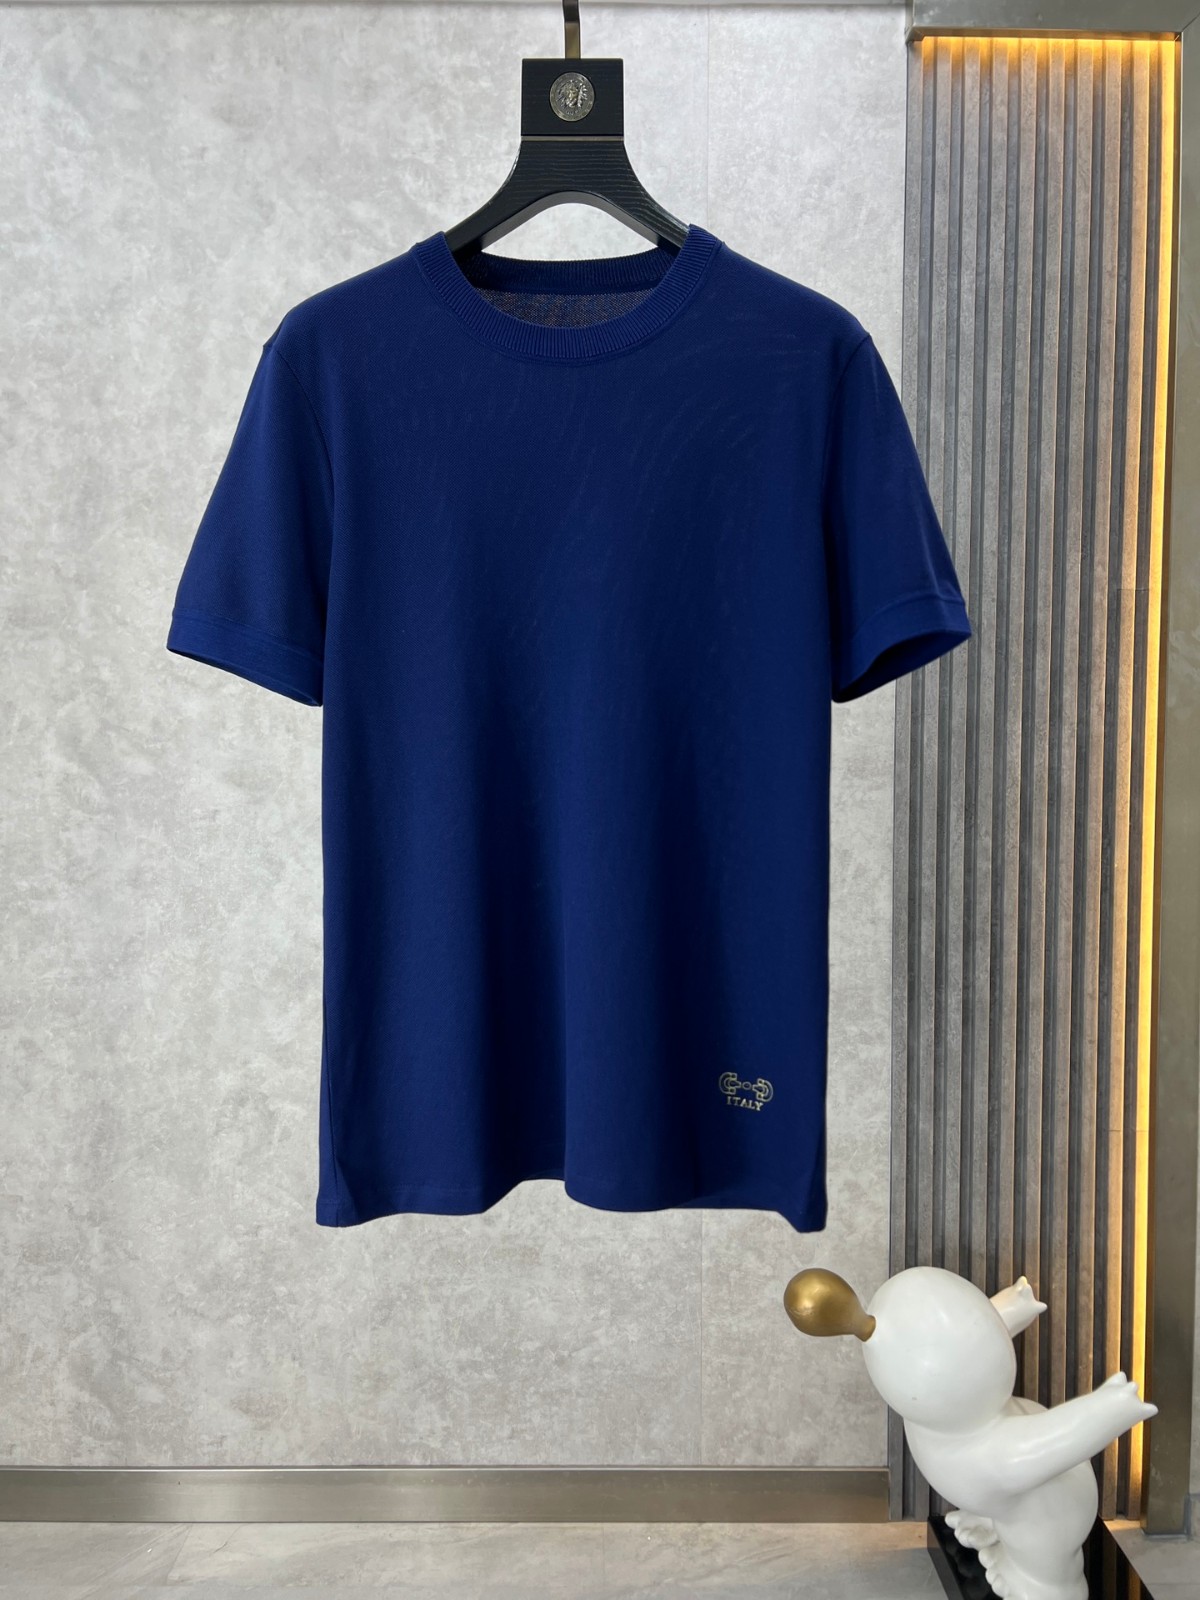 サルヴァトーレ・フェラガモ Tシャツ コピー シンプル ロゴ入り 半袖Tシャツ ブルー